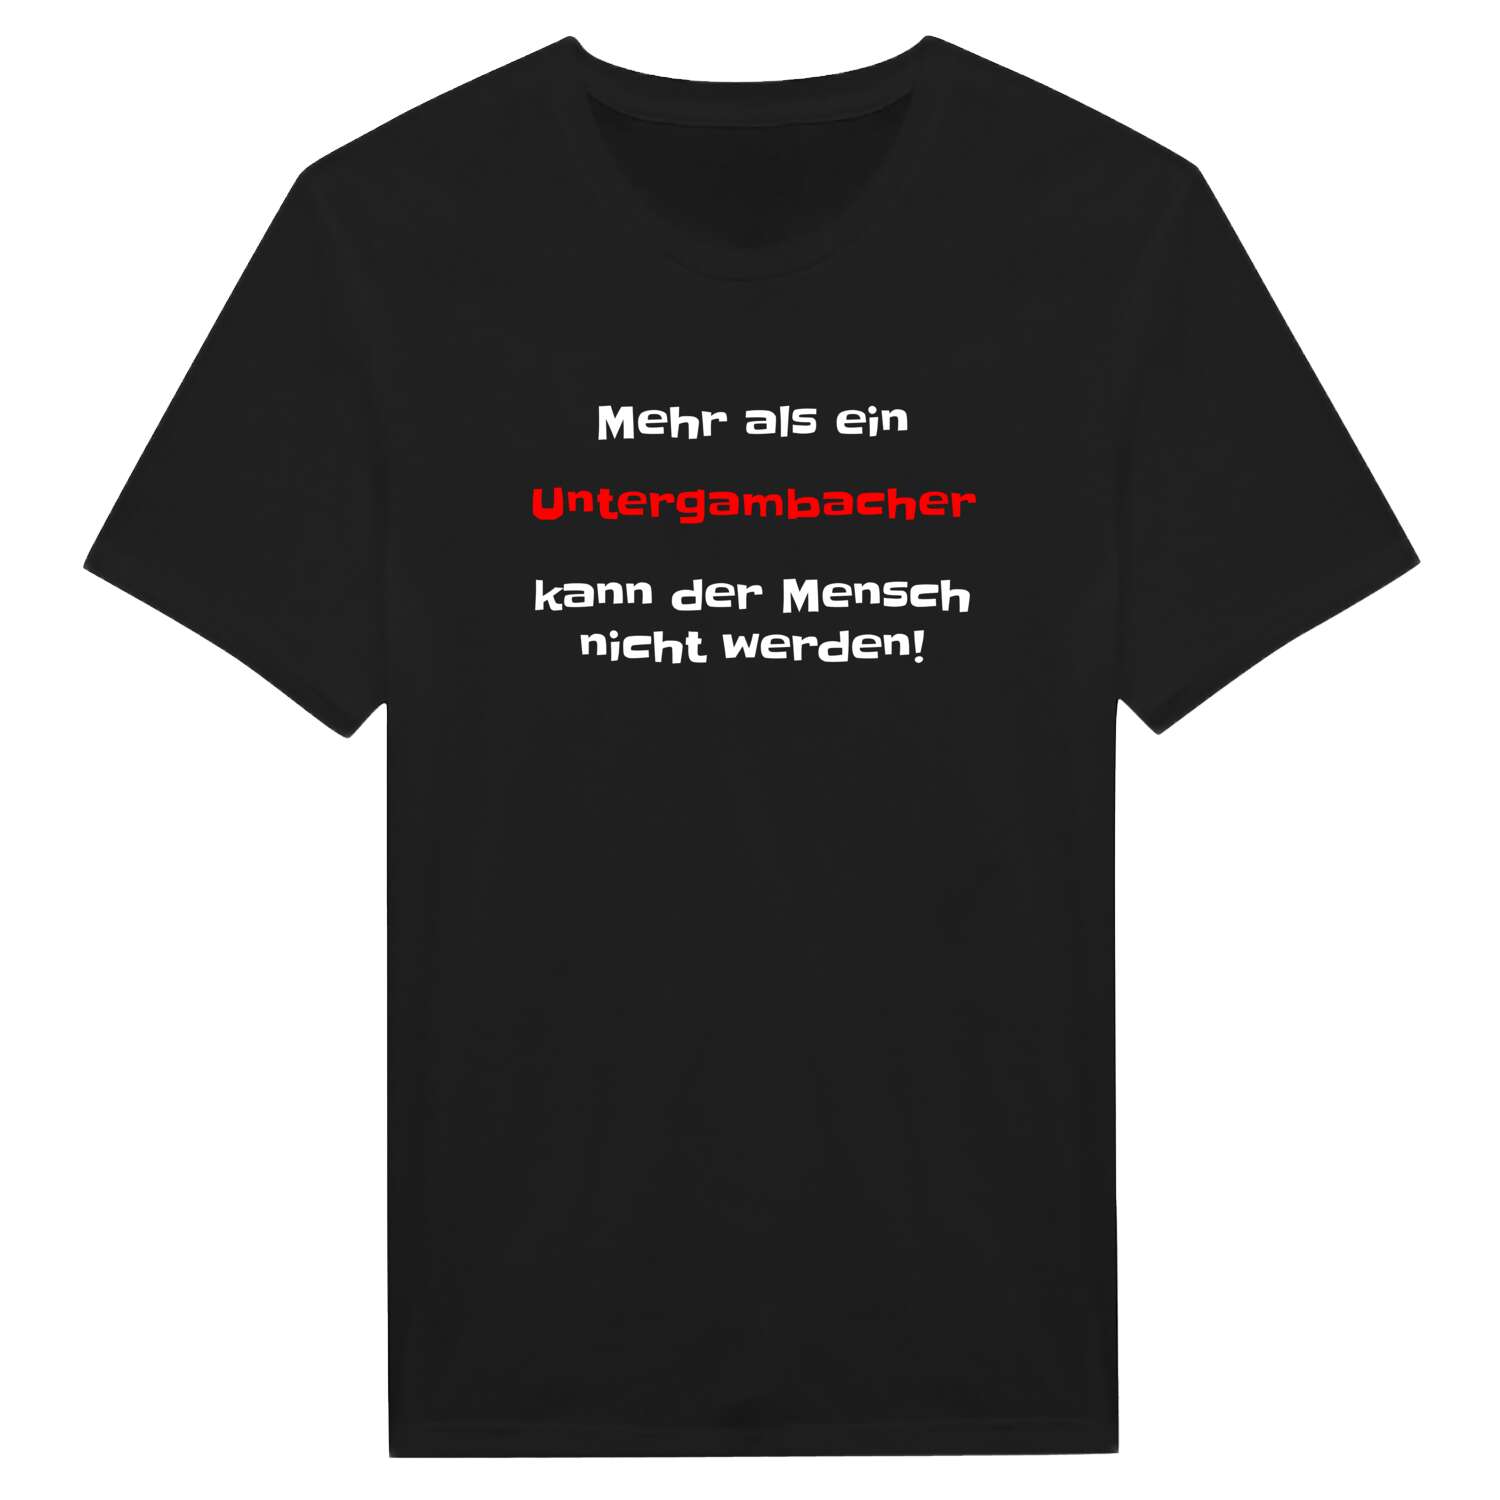 Untergambach T-Shirt »Mehr als ein«